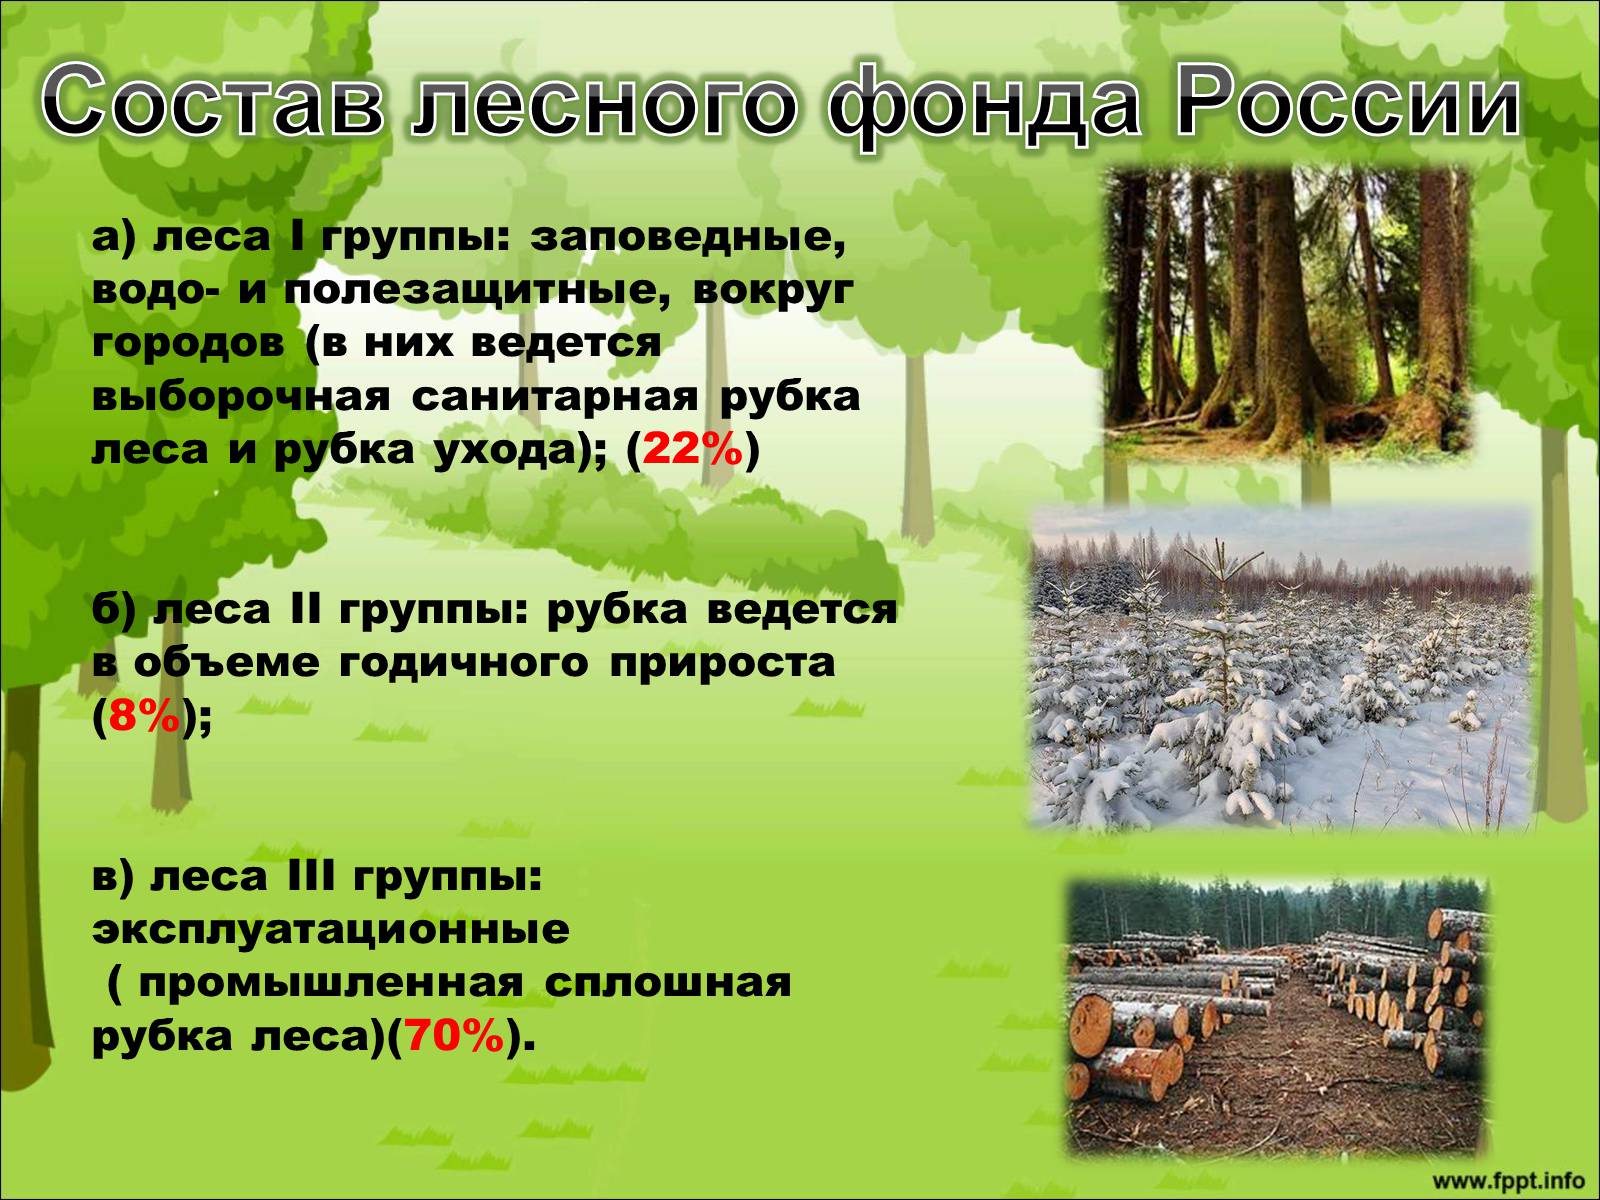 Лесной фонд России